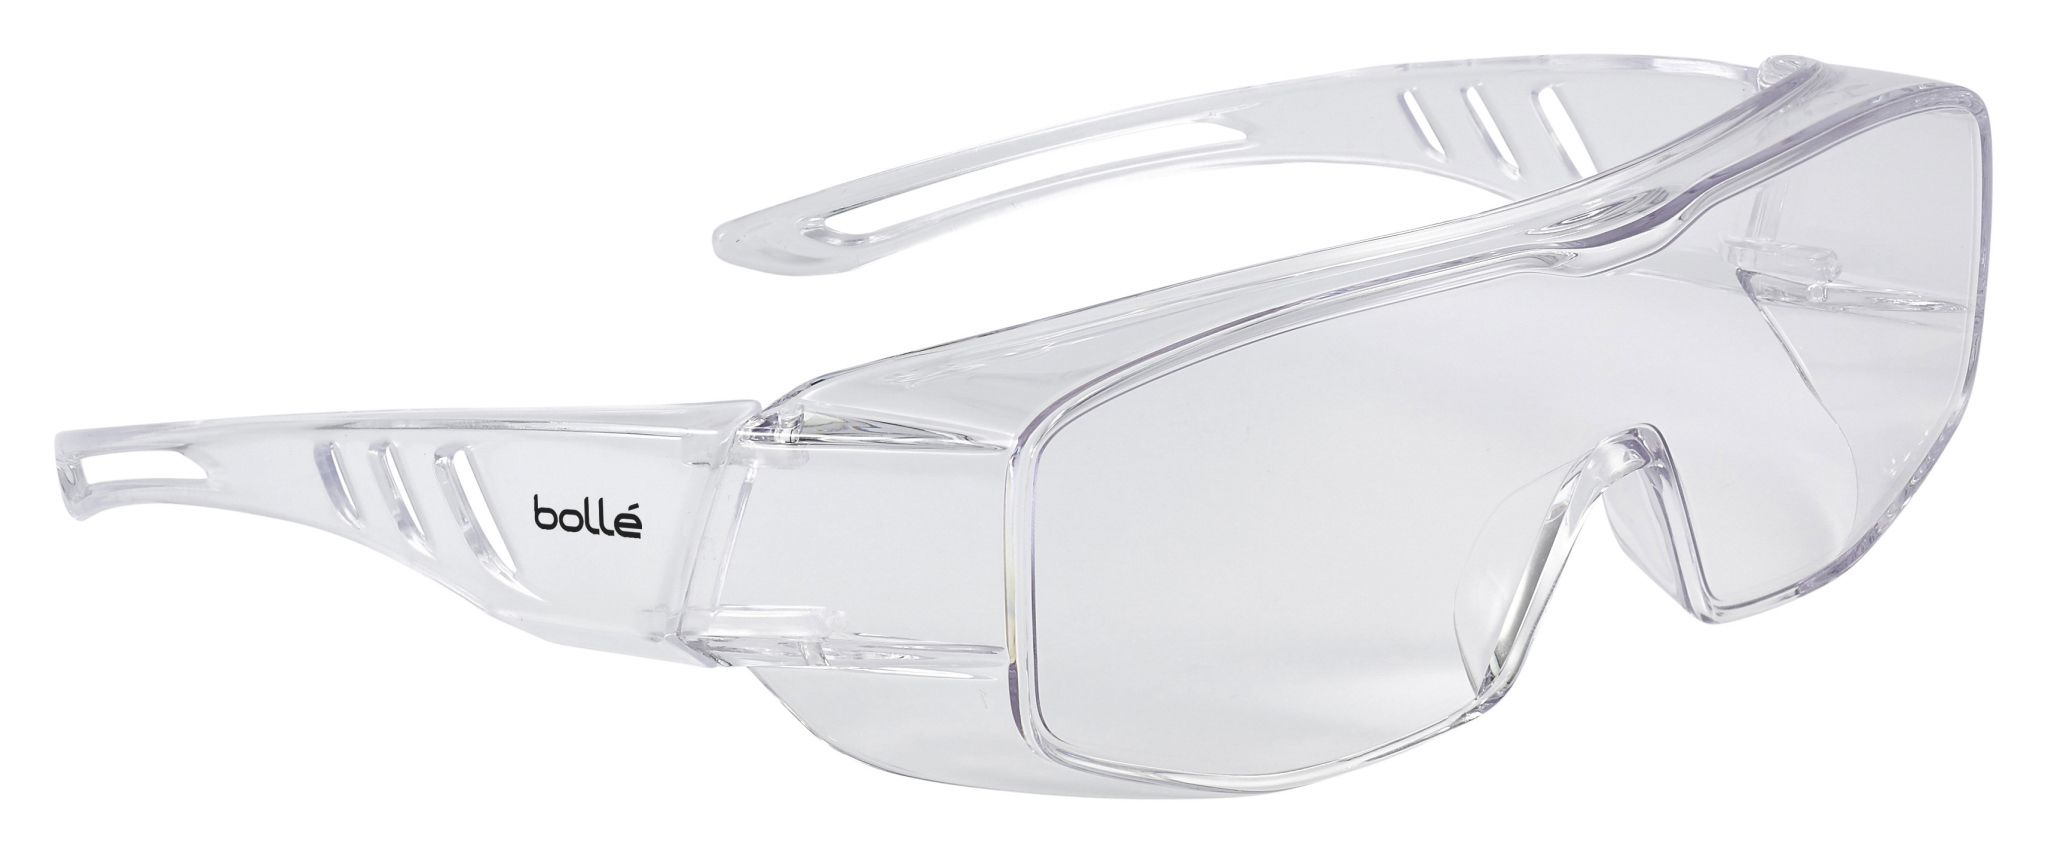 Bolle Overlight Schutzbrille Überbrille Linse Klar, kratzfest mit UV-Schutz